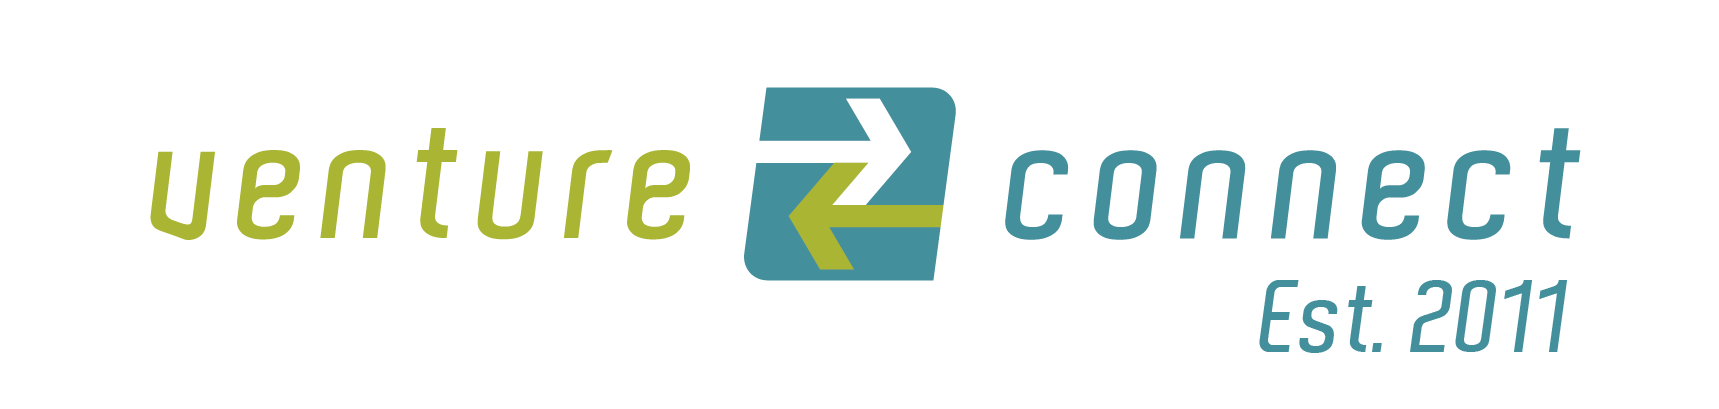 Venture Connect logo